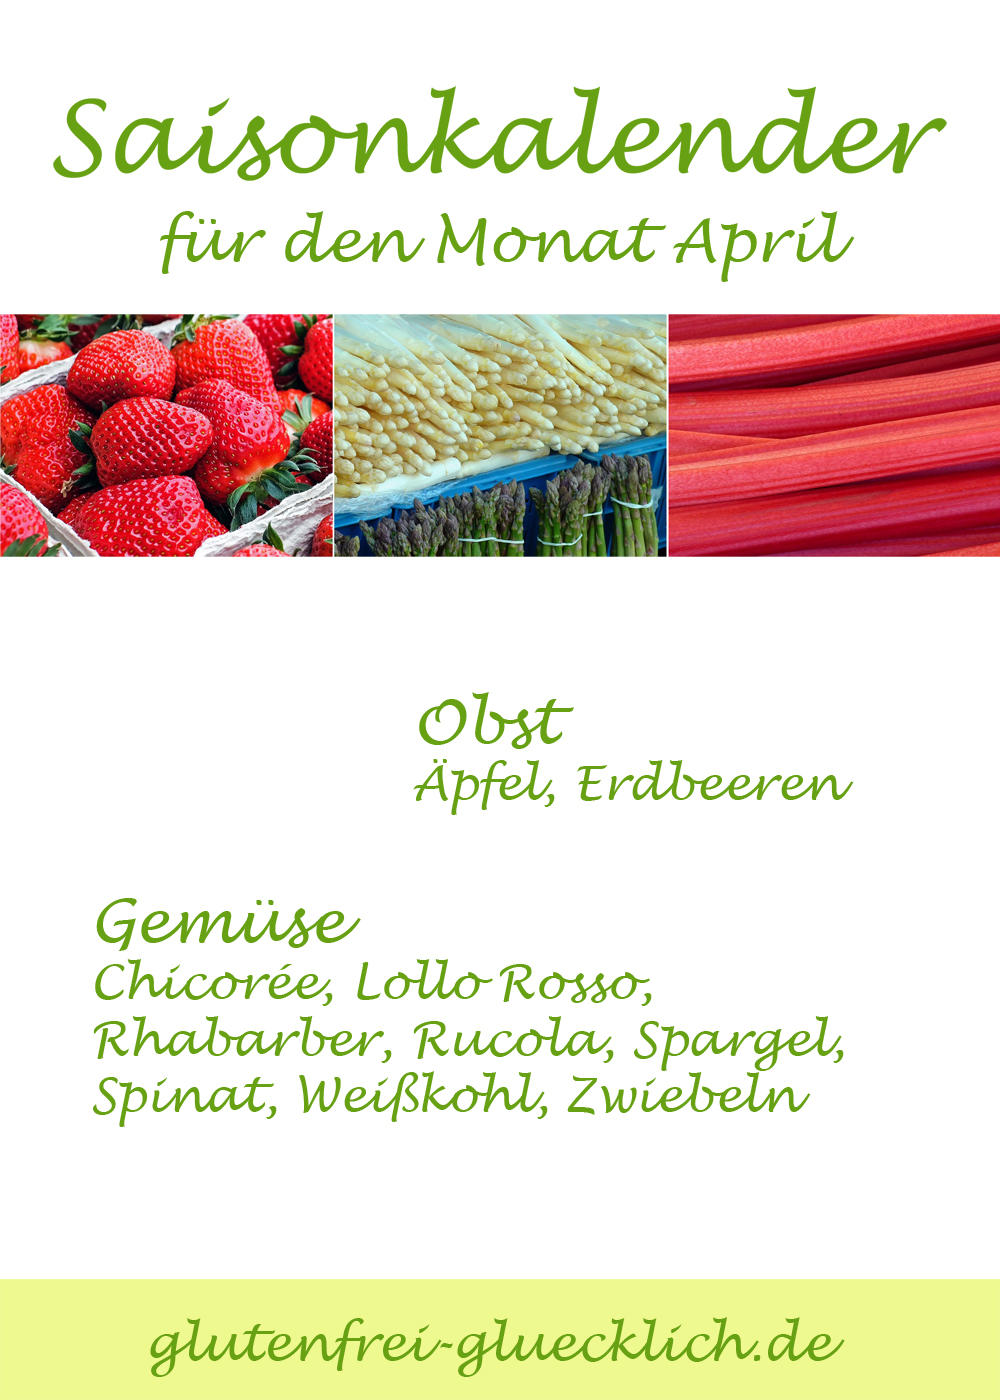 Der Saisonkalender April von glutenfrei-gluecklich.de zeigt euch welche heimischen Obst- und Gemüsesorten im April Saison haben und regional frisch erhältlich sind.